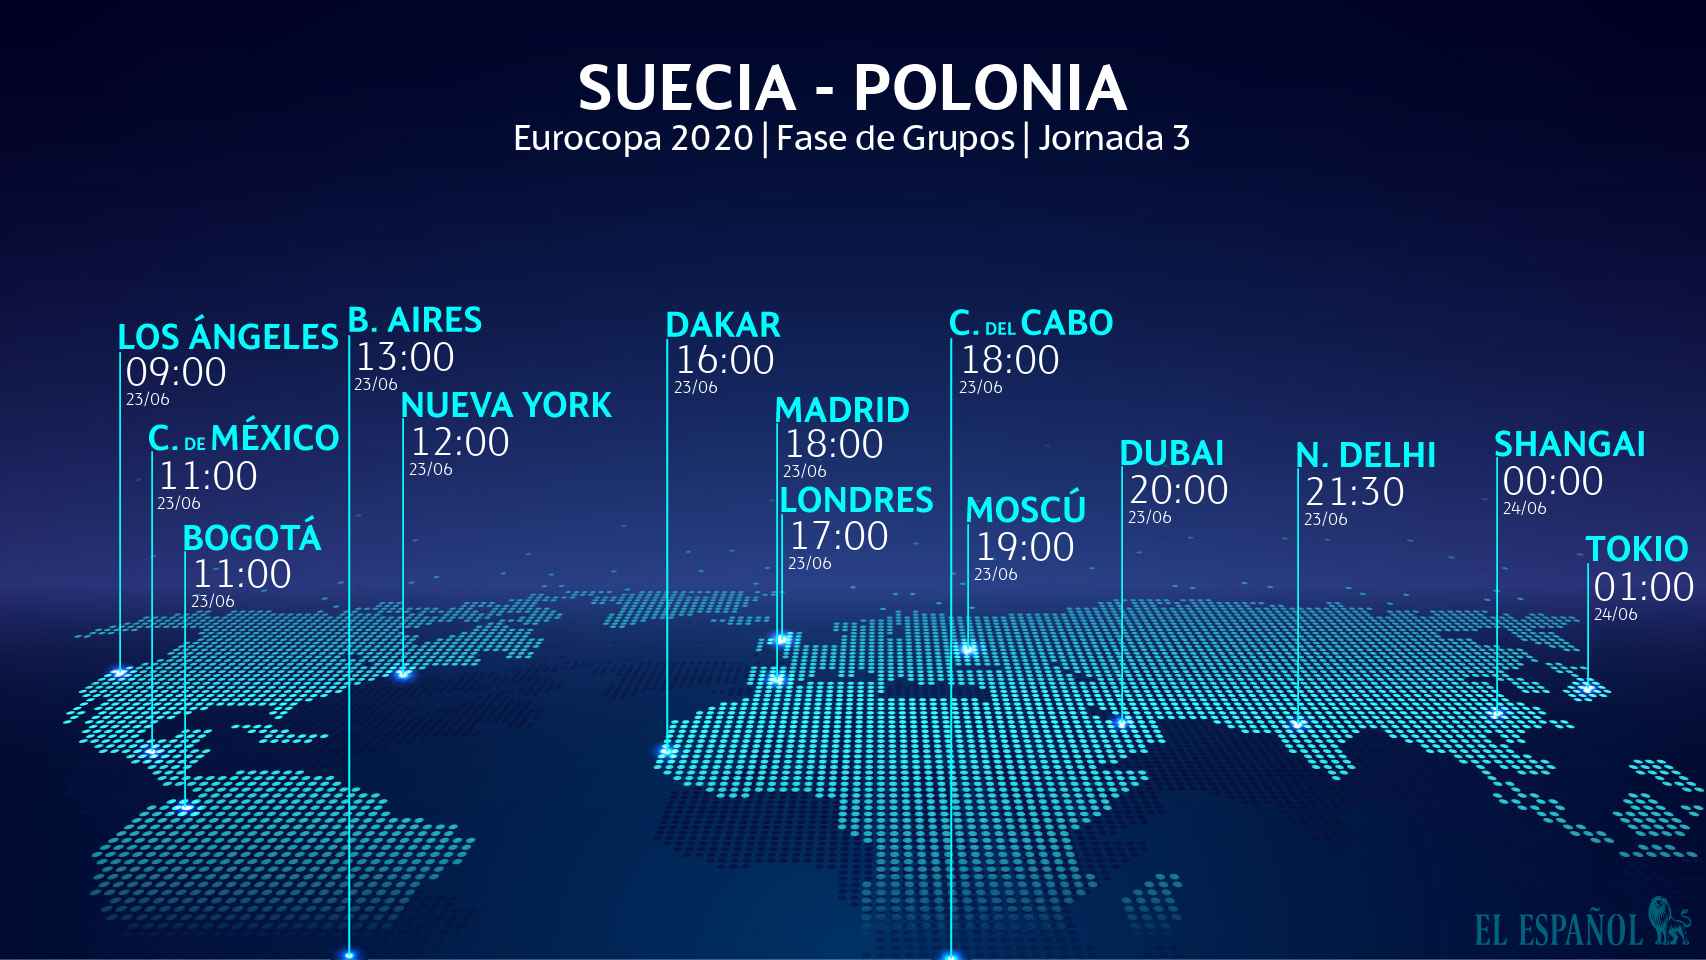 El horario internacional del Suecia - Polonia de la Eurocopa